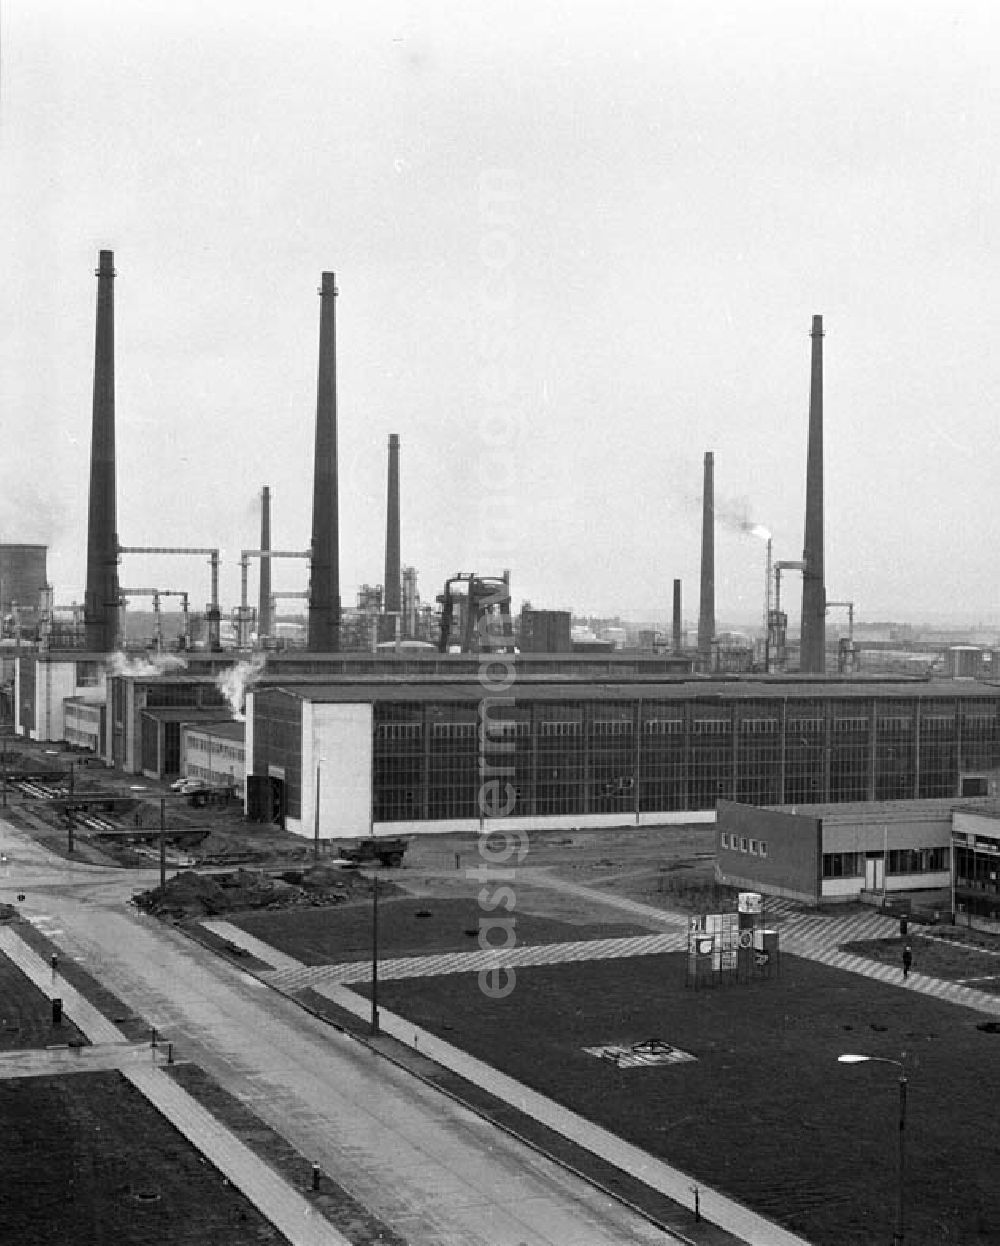 GDR image archive: Schwedt - Dezember 1965 Erdölverarbeitungswerk Schwedt/Oder heute: PCK Raffinerie GmbH, Passower Chaussee 111, 16303 Schwedt/Oder, Tel.: +49 3332 46